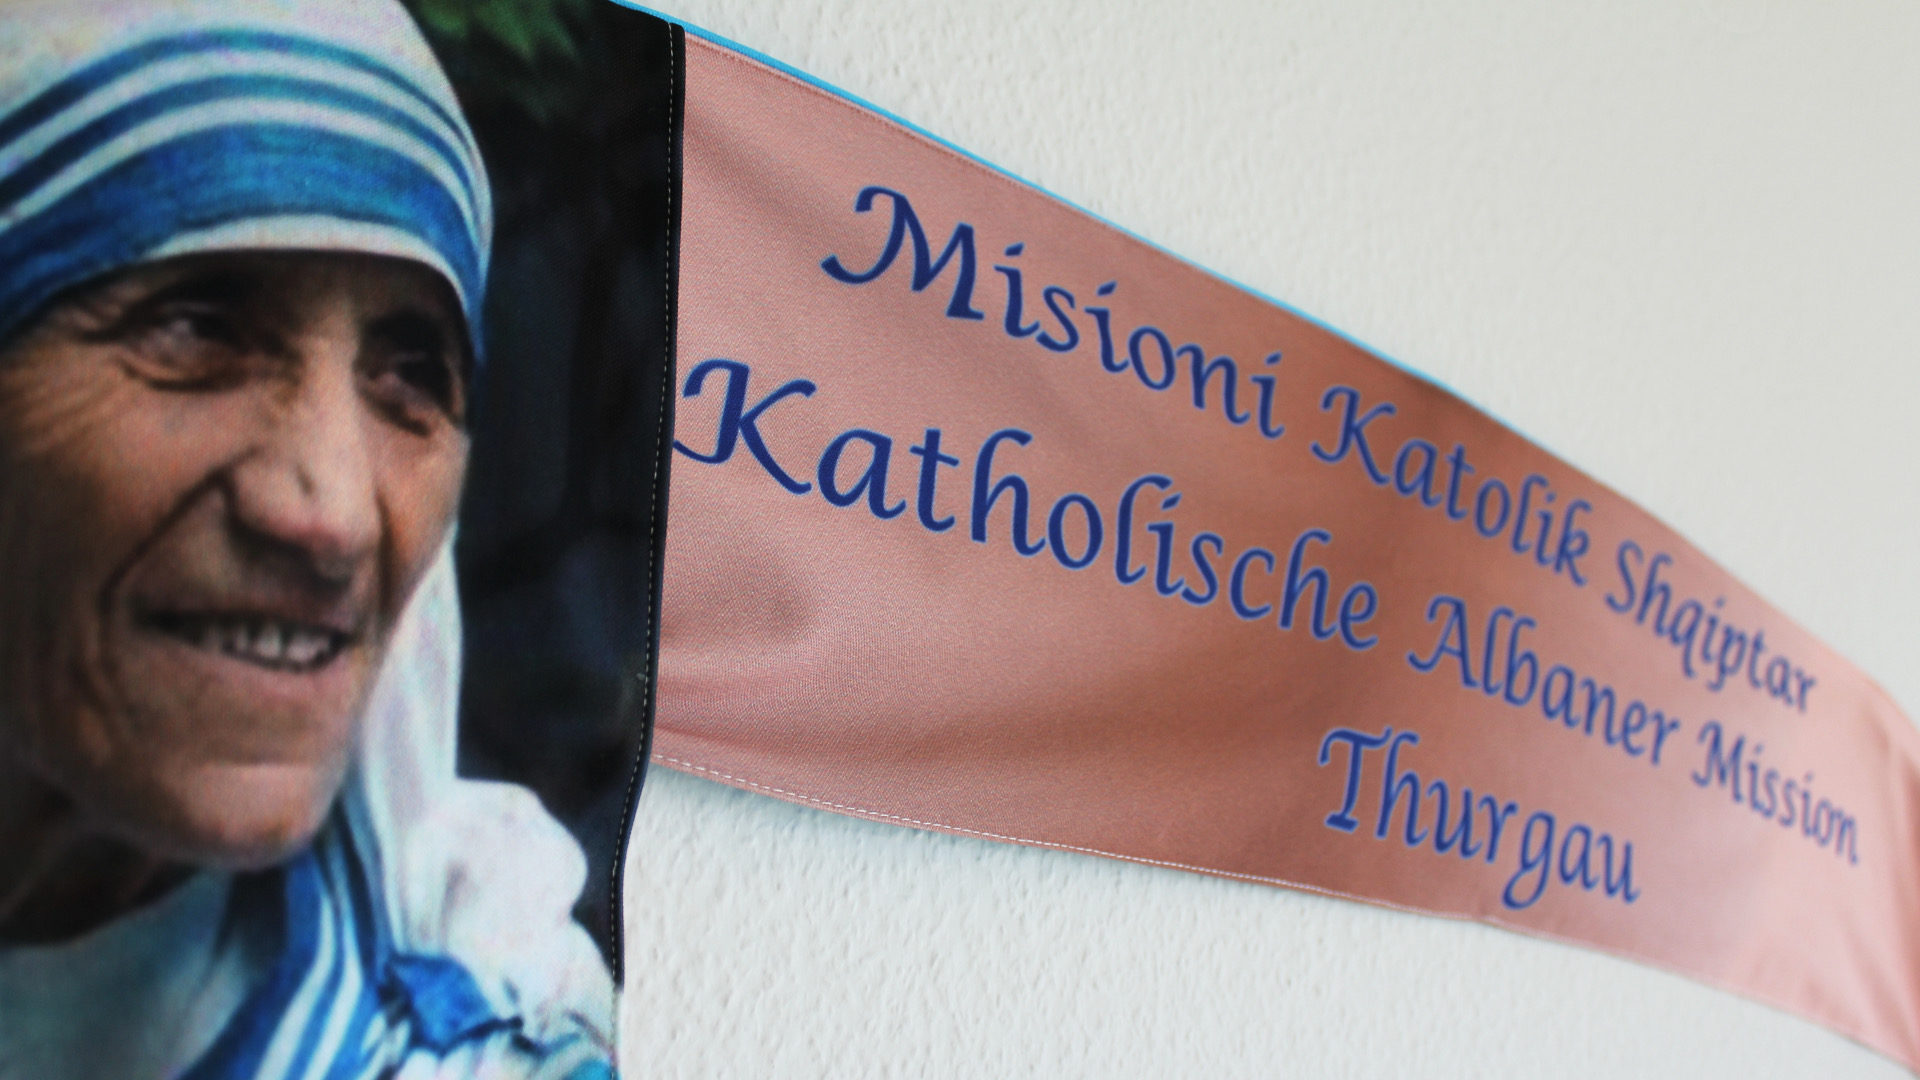 Mutter Teresa schmückt das Banner der Albanermission Thurgau